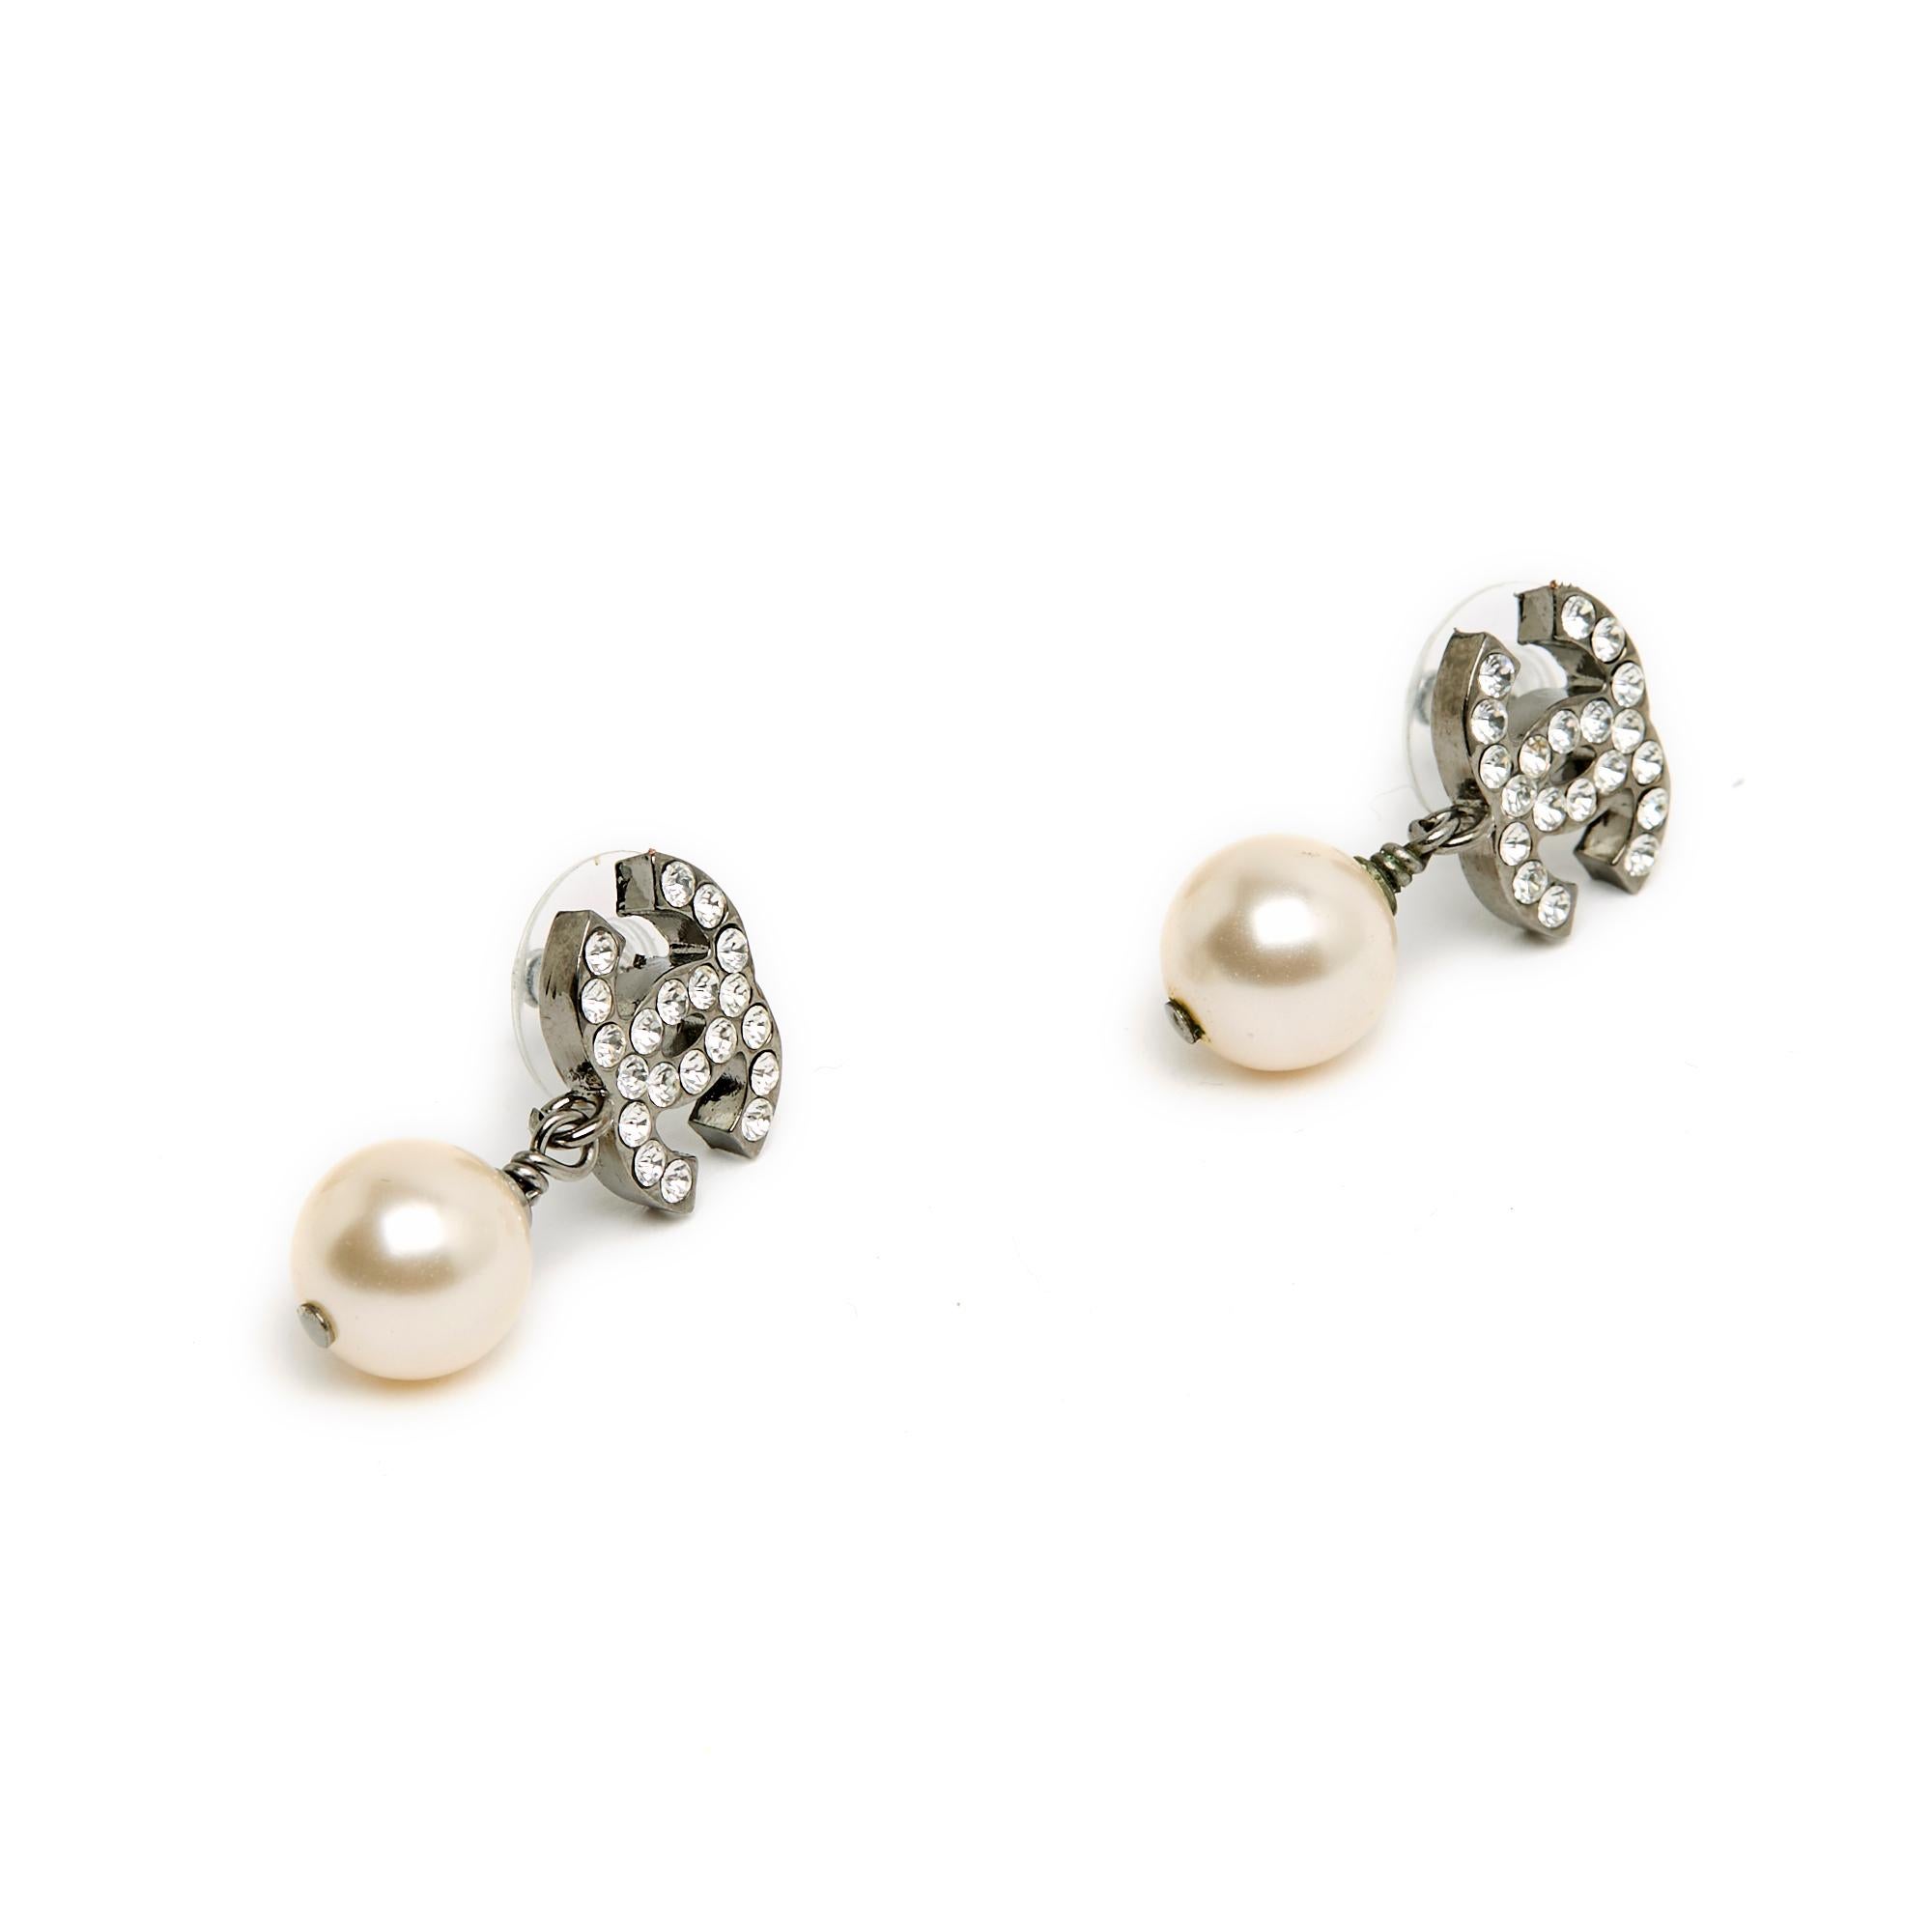 Chanel Ohrstecker, bestehend aus einem Chanel CC-Logo aus geschwärztem, silbernem Metall, das mit Strasssteinen besetzt ist, und einem runden, ausgefallenen Perlenanhänger. Breite 1,5 cm x Höhe 2,65 cm. Die Ohrringe werden ohne Rechnung oder